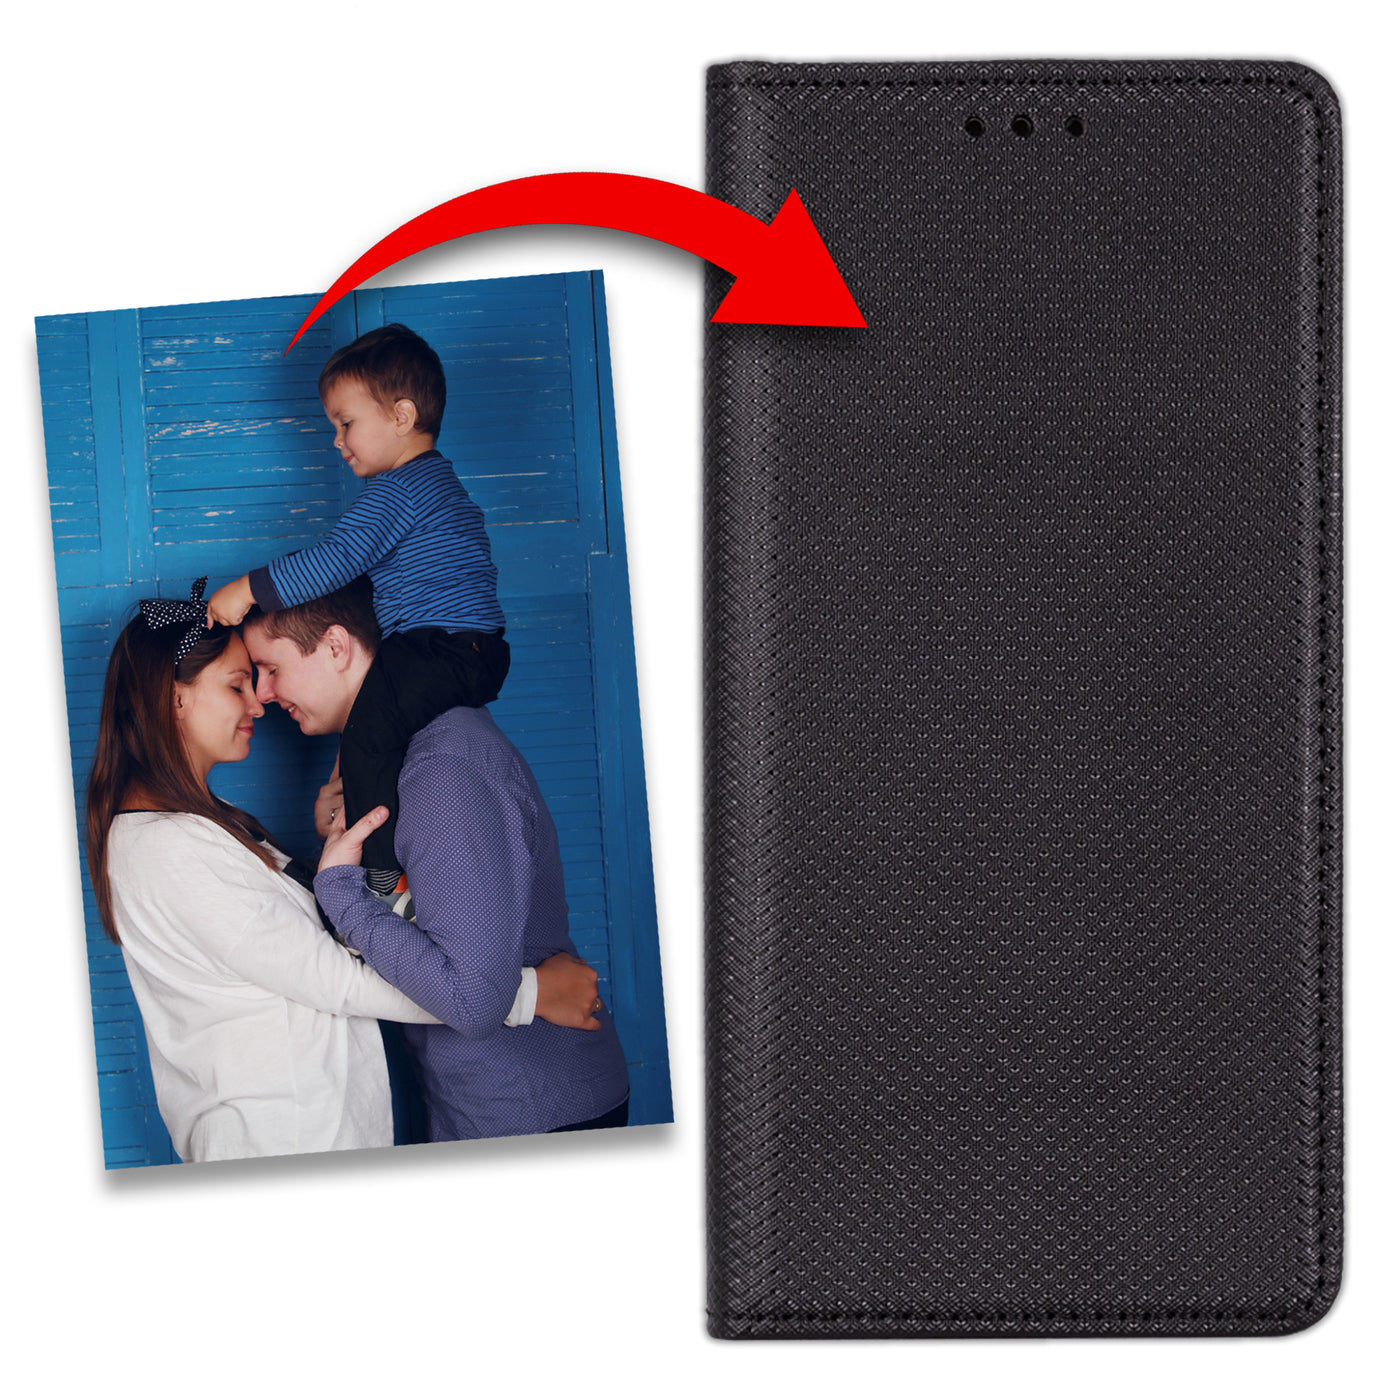 Handyhülle für Huawei P30 Lite personalisierte Hülle mit eigenem Bild Motiv Design Smart Magnet Klapphülle